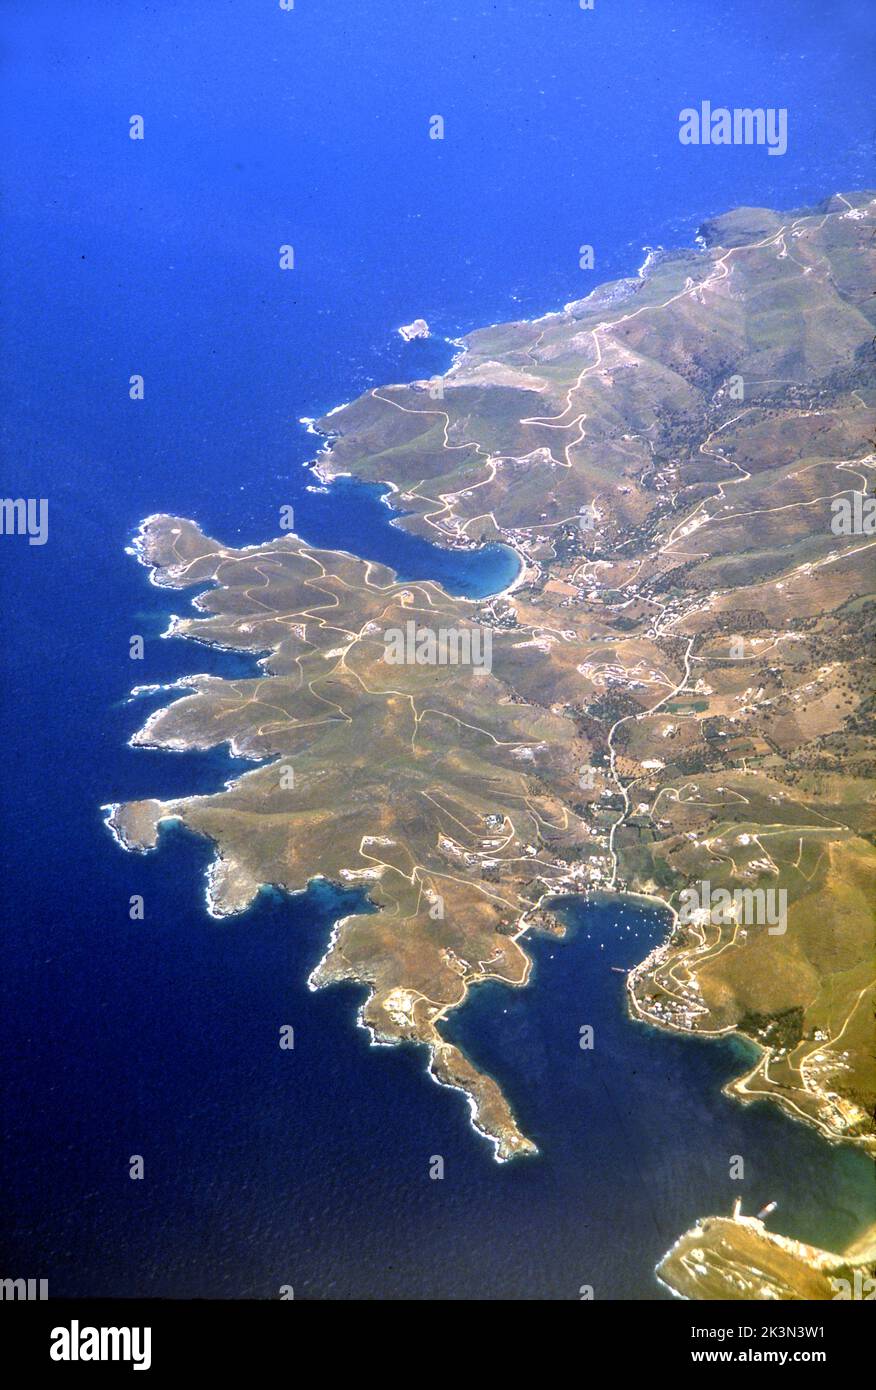 Vista aerea dell'isola greca di Creta nel Mar Egeo. Foto Stock